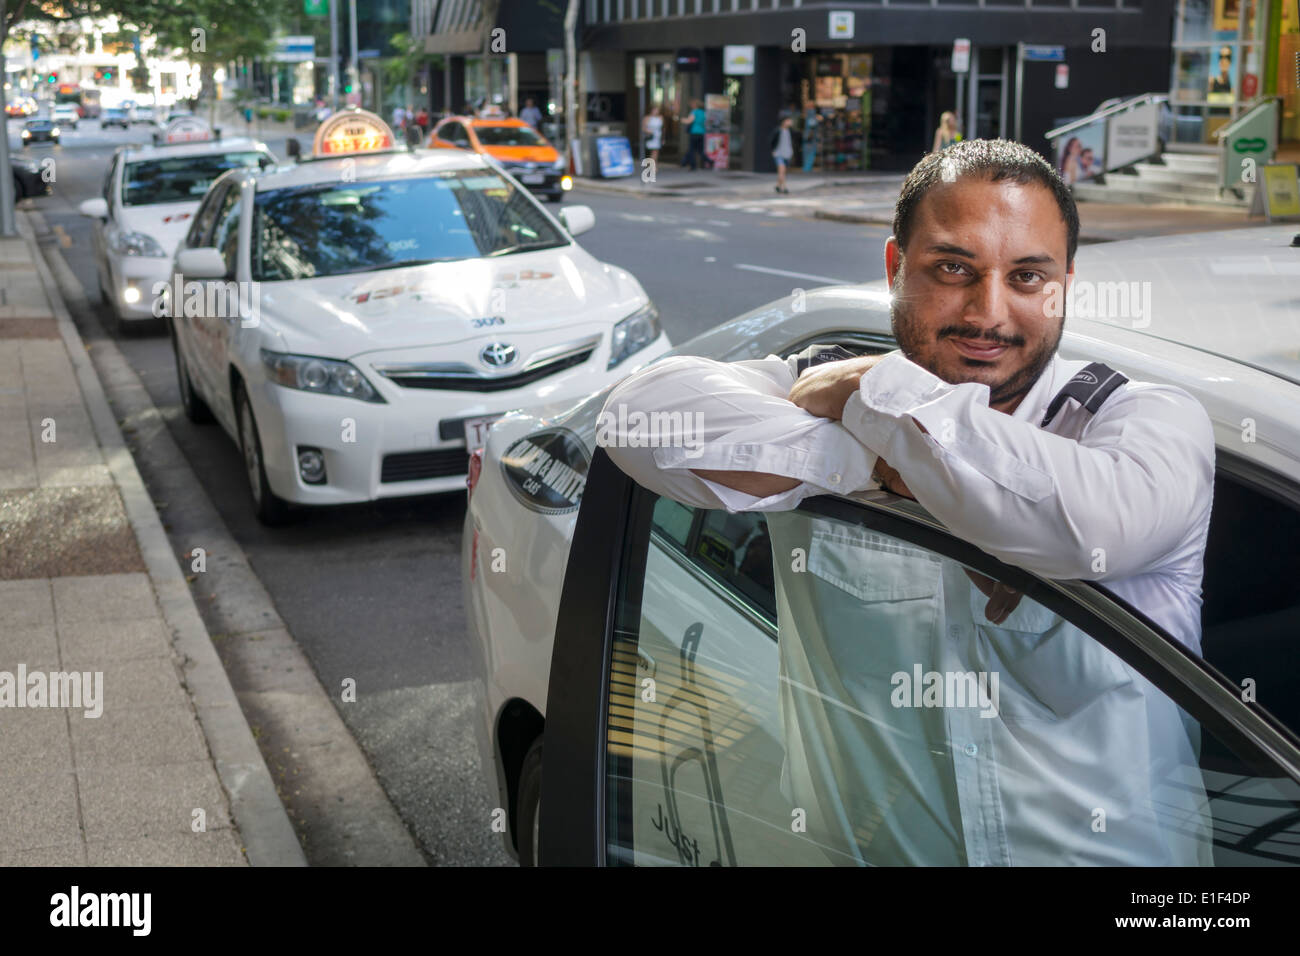 Brisbane Australien, Asiatisch-Inder, Mann, Männer, Taxi, Taxi, Fahrer, Einwanderer, AU140313122 Stockfoto